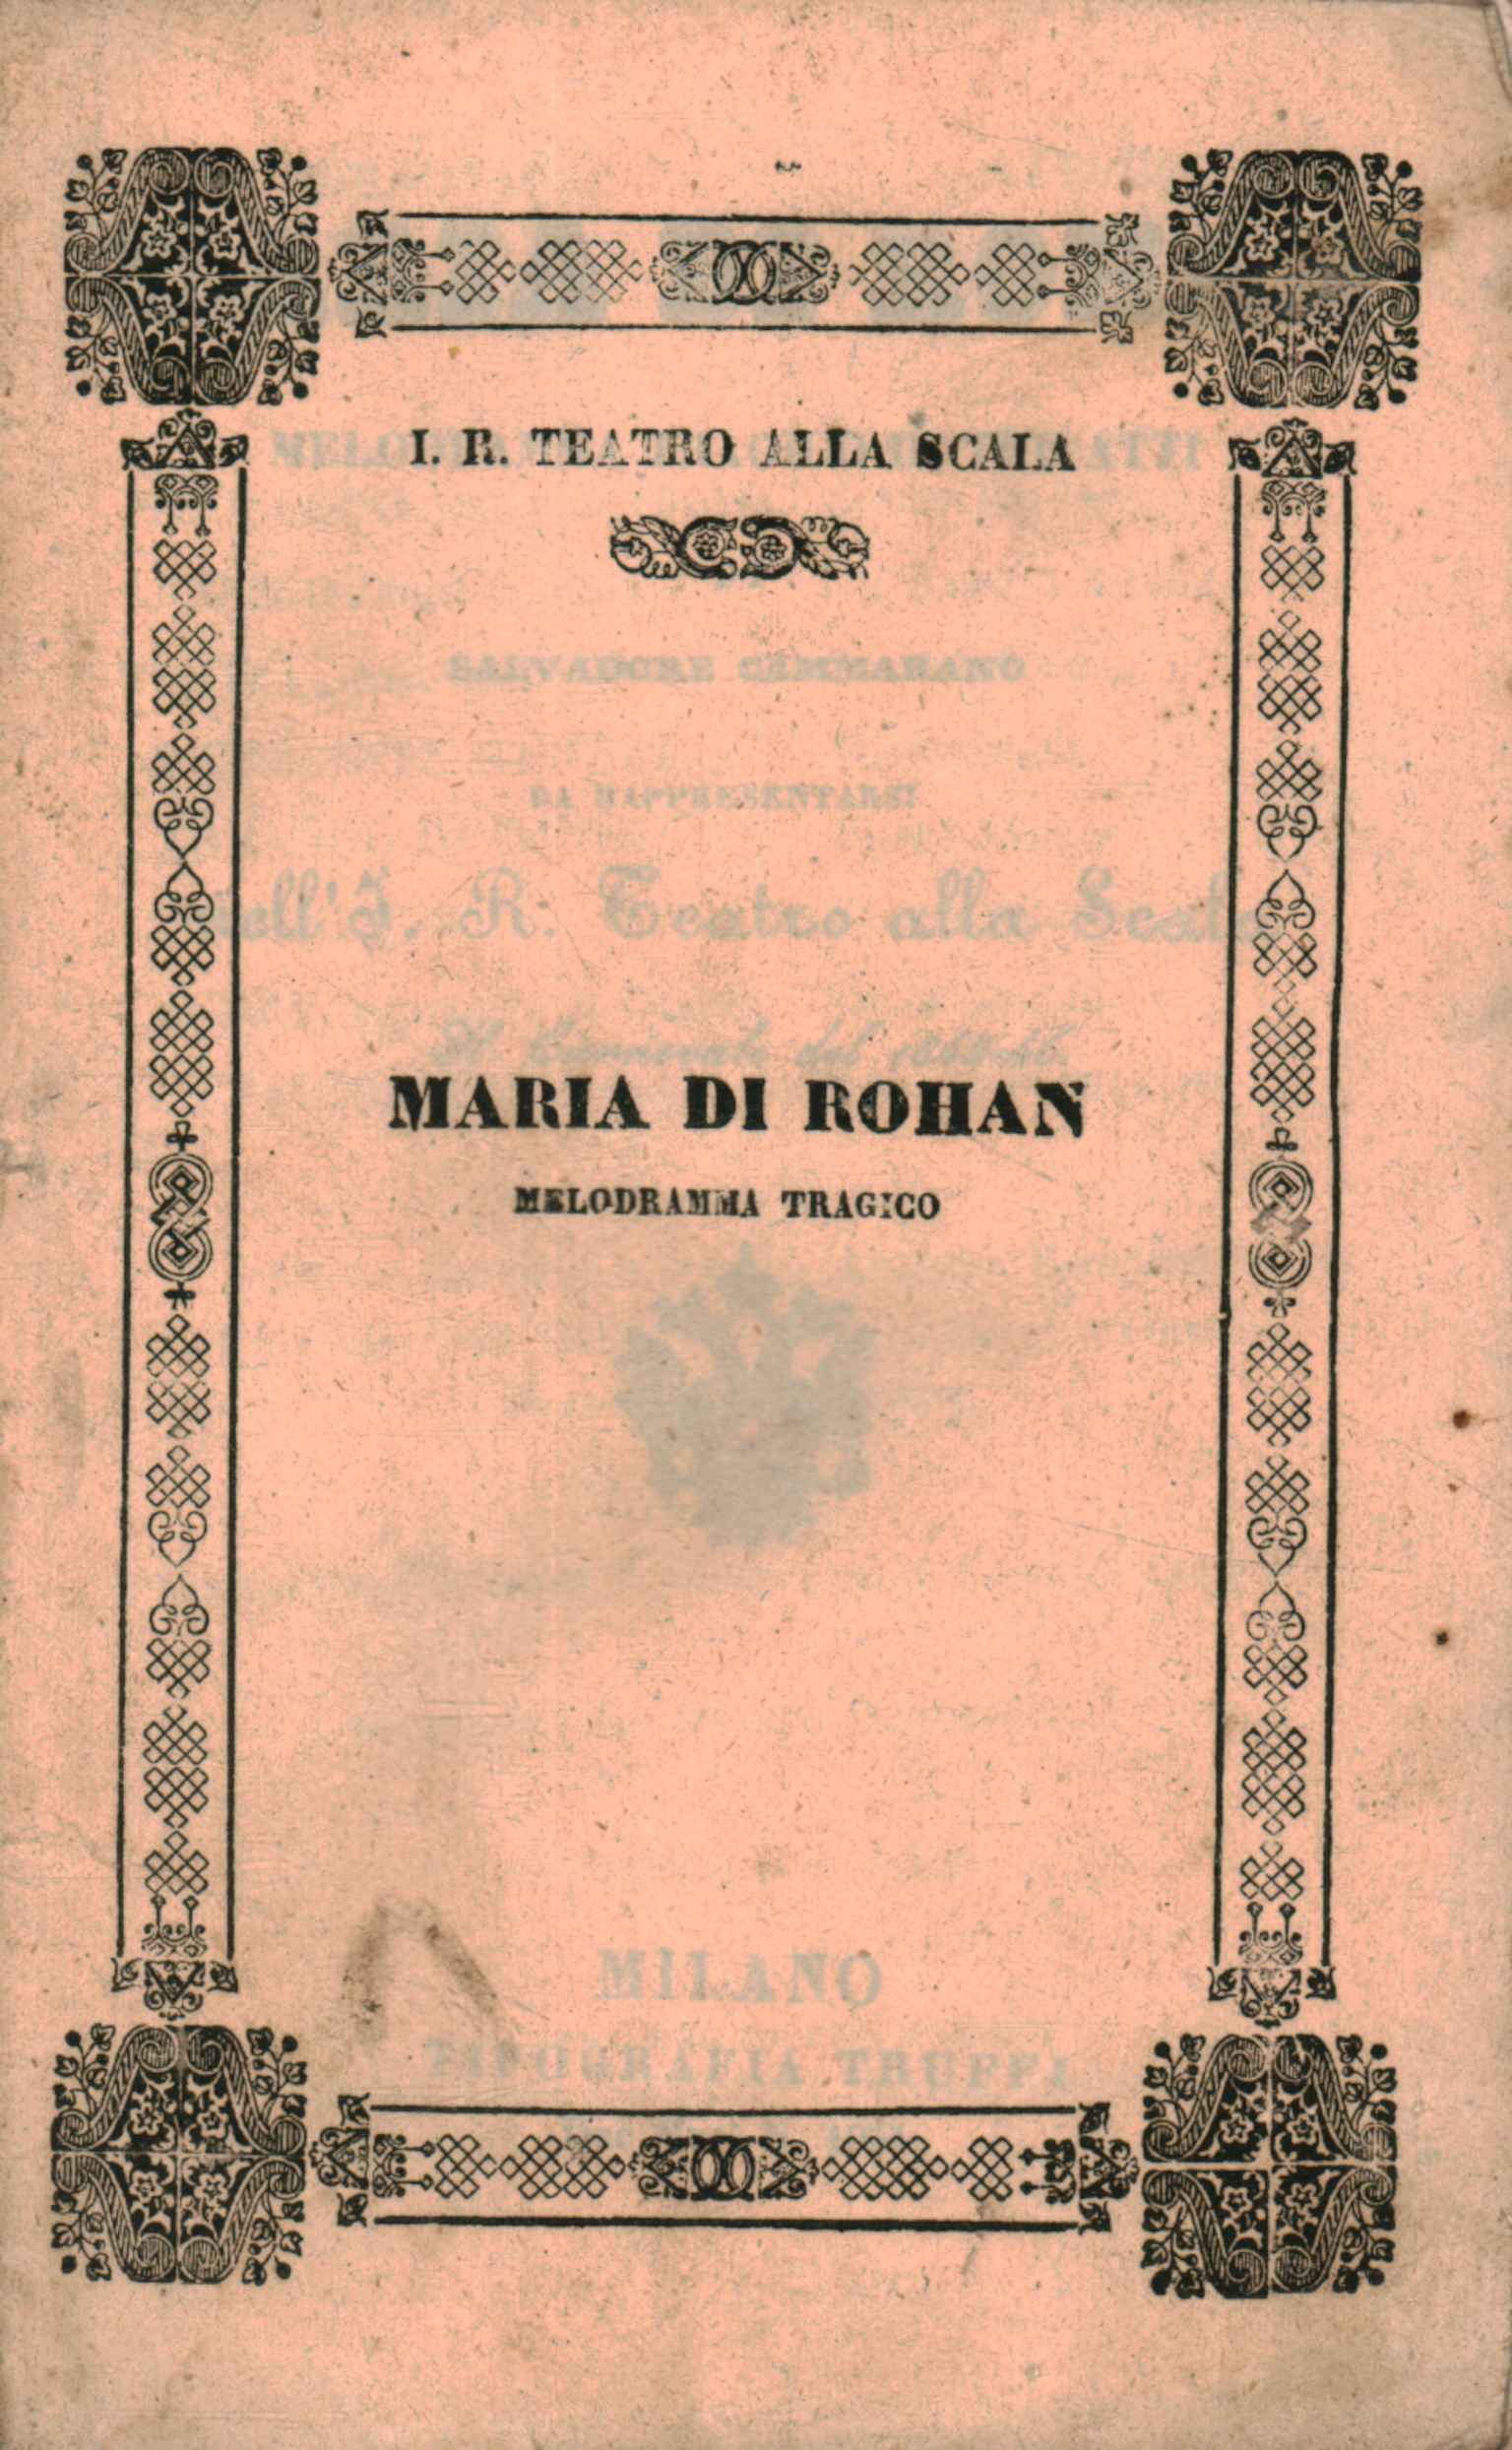 Maria di Rohan Tragisches Melodram in d